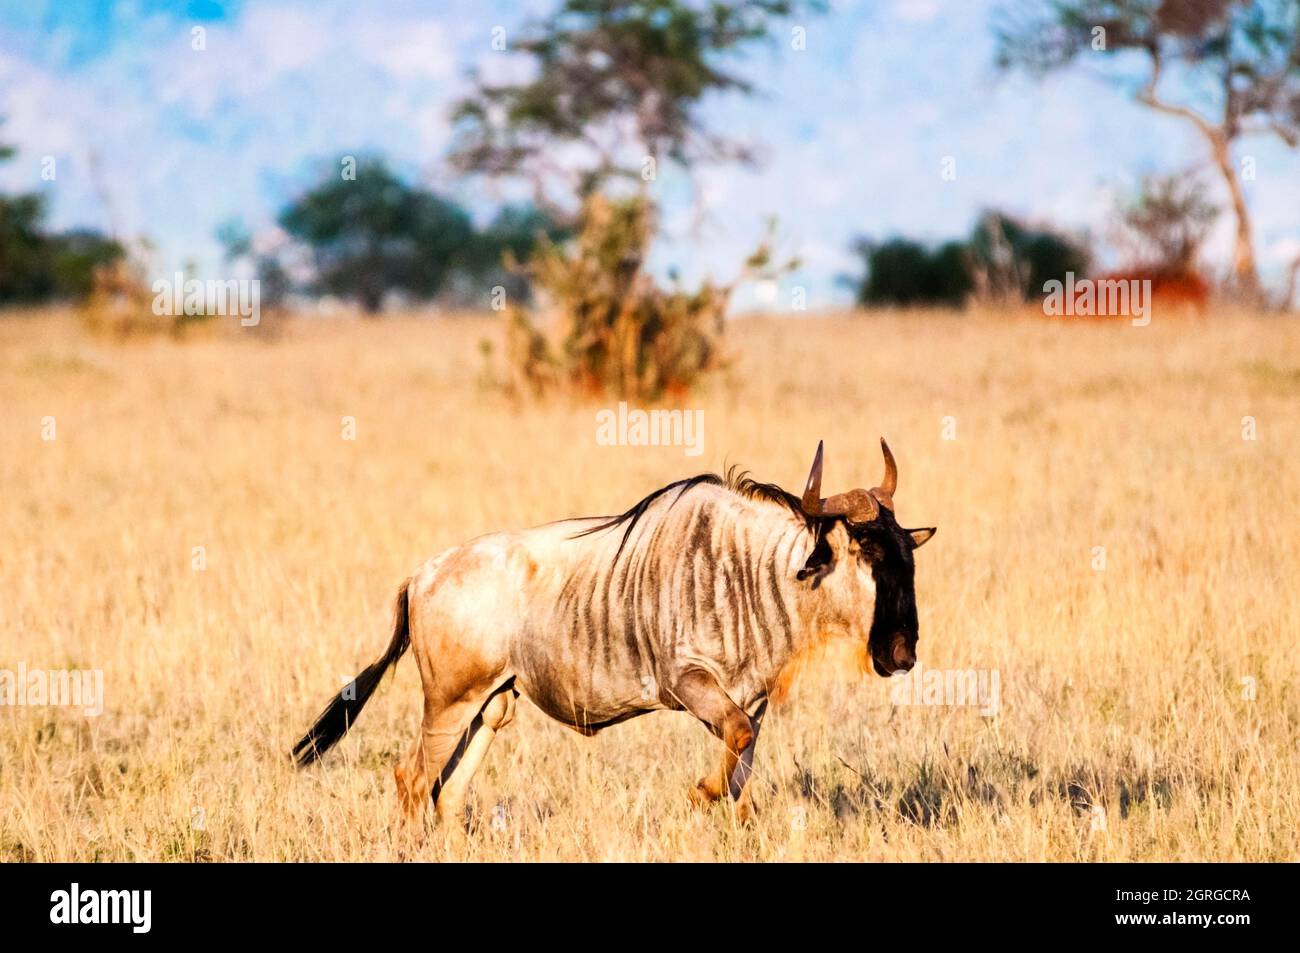 Kenya, Taita Hills, Lualenyi Ranch, One wildebeest (Connochaetes taurinus) Stock Photo